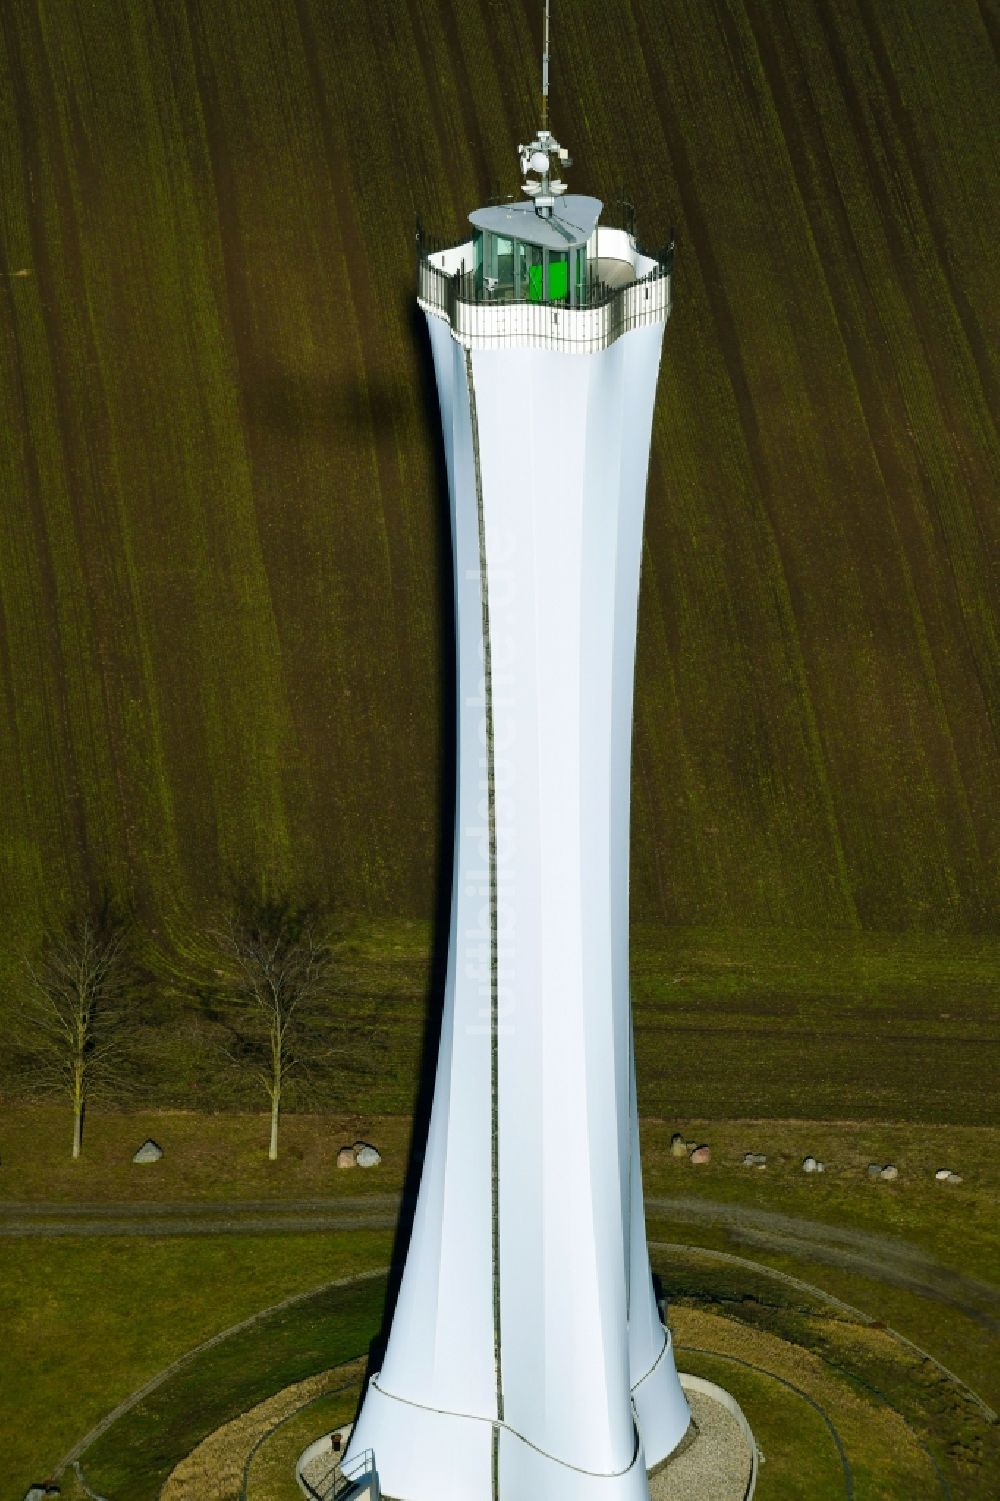 Teichland aus der Vogelperspektive: Bauwerk des Aussichtsturmes Bärenbrücker Höhe in Teichland im Bundesland Brandenburg, Deutschland